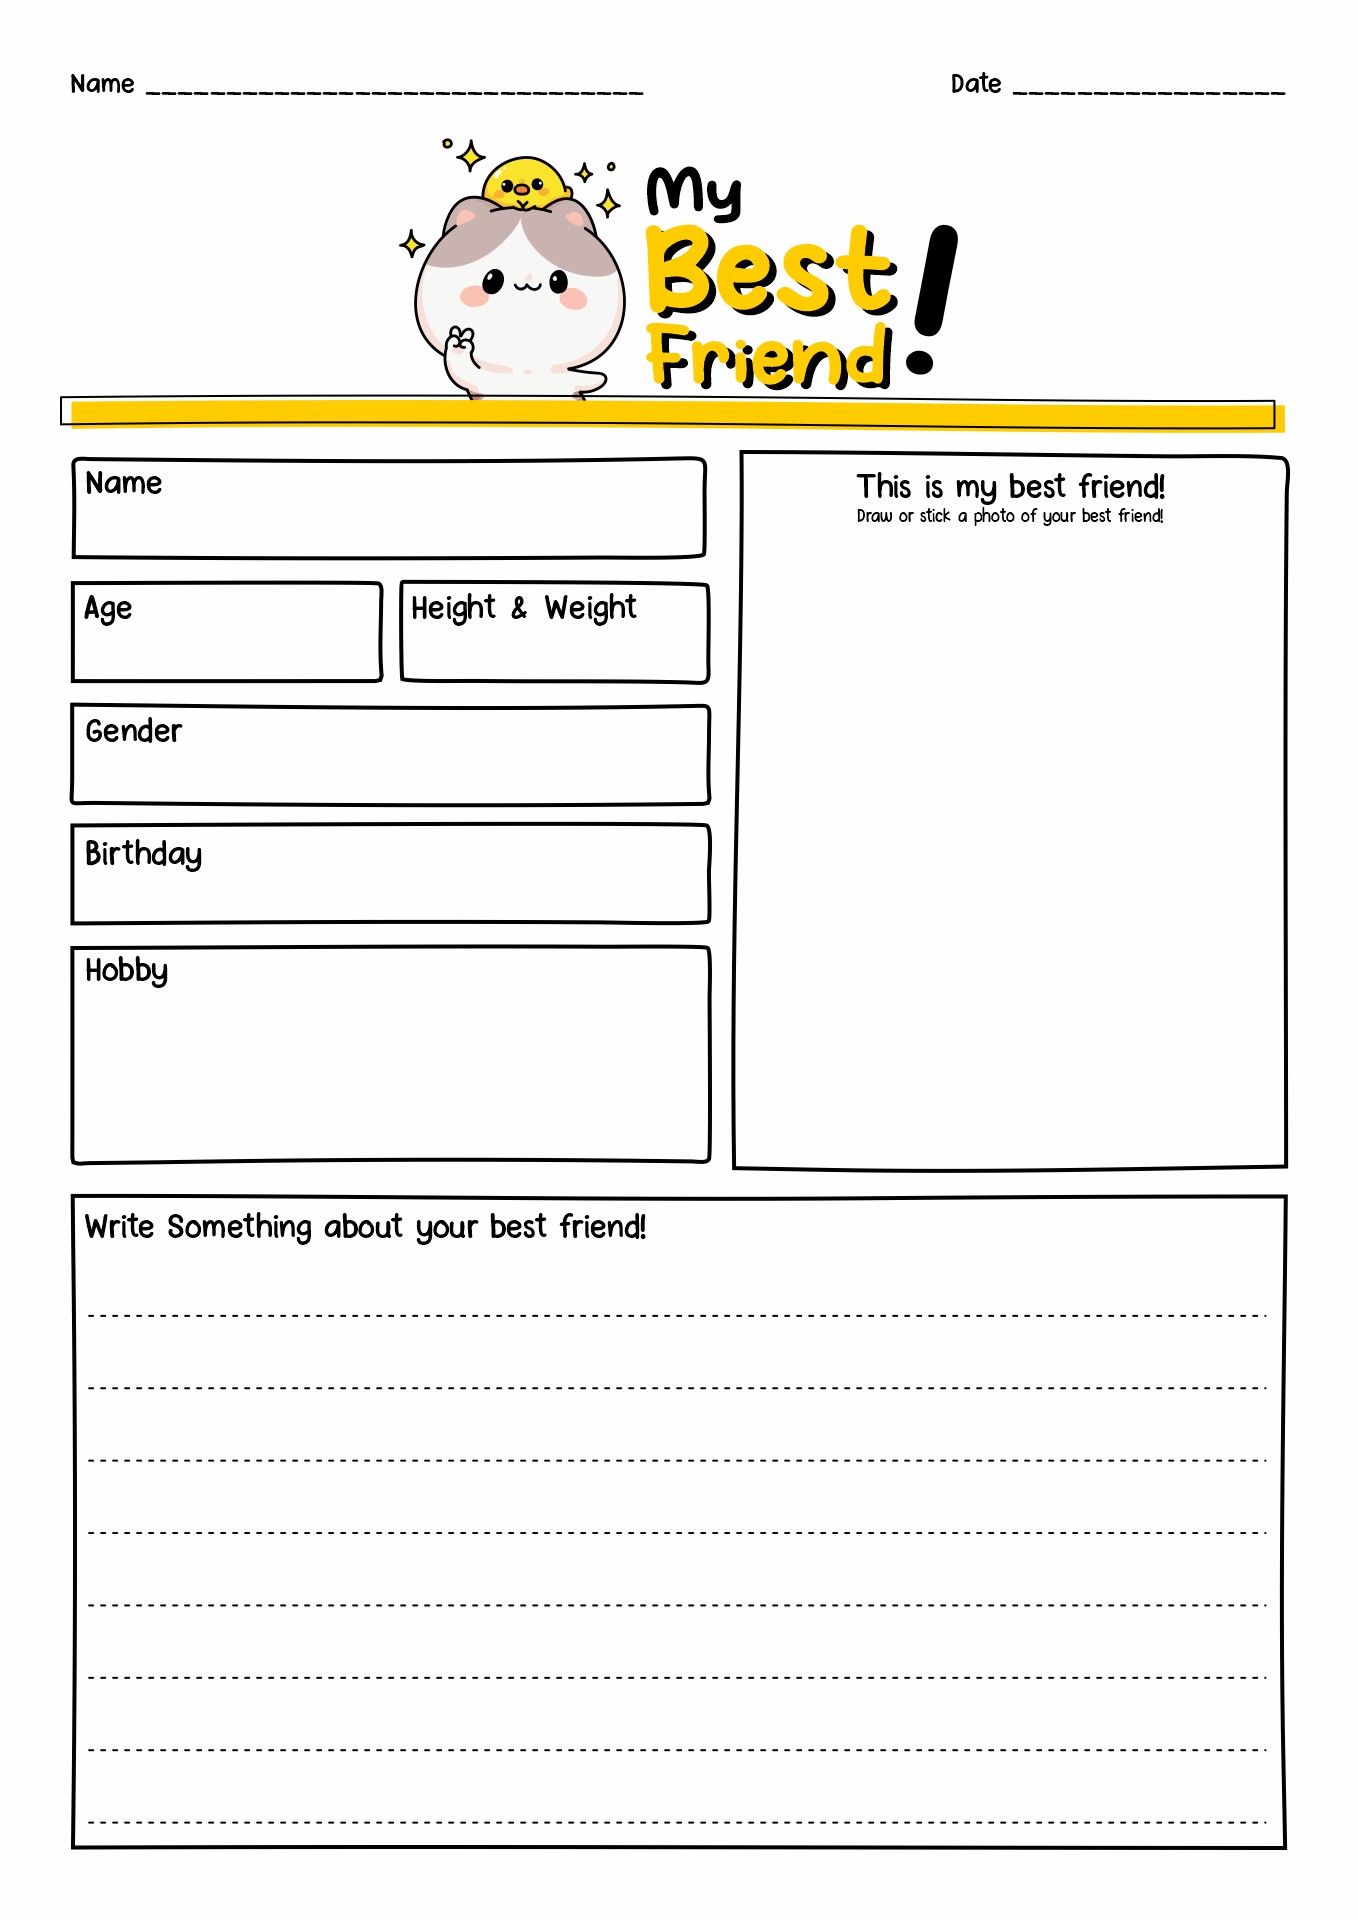 Best Friends Worksheet Printable Image